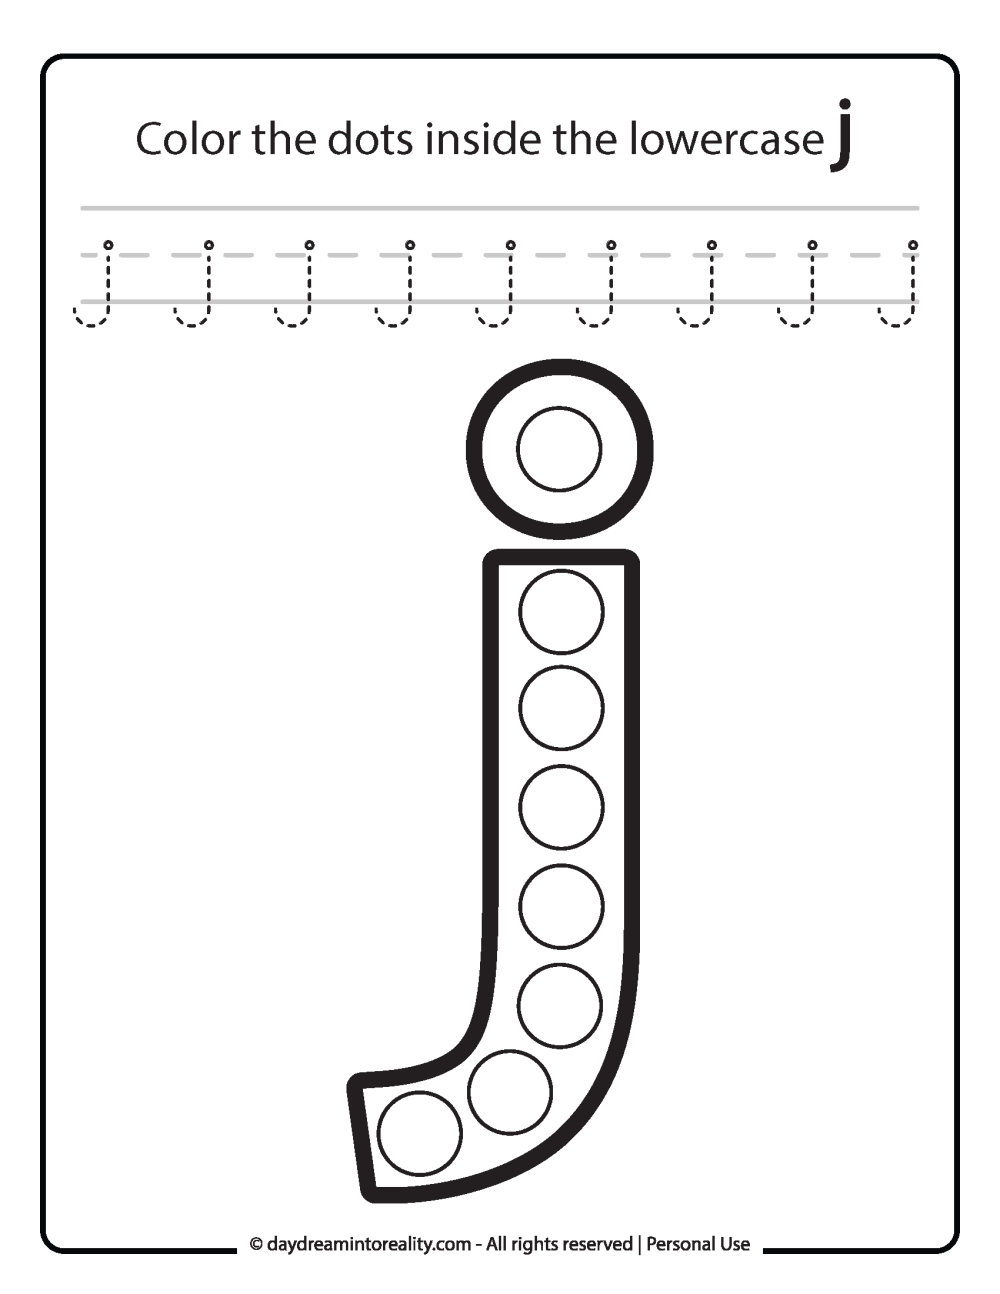 Lowercase "j" Dot Marker Worksheet Free Printable activity for kids (preschool, kindergarten)